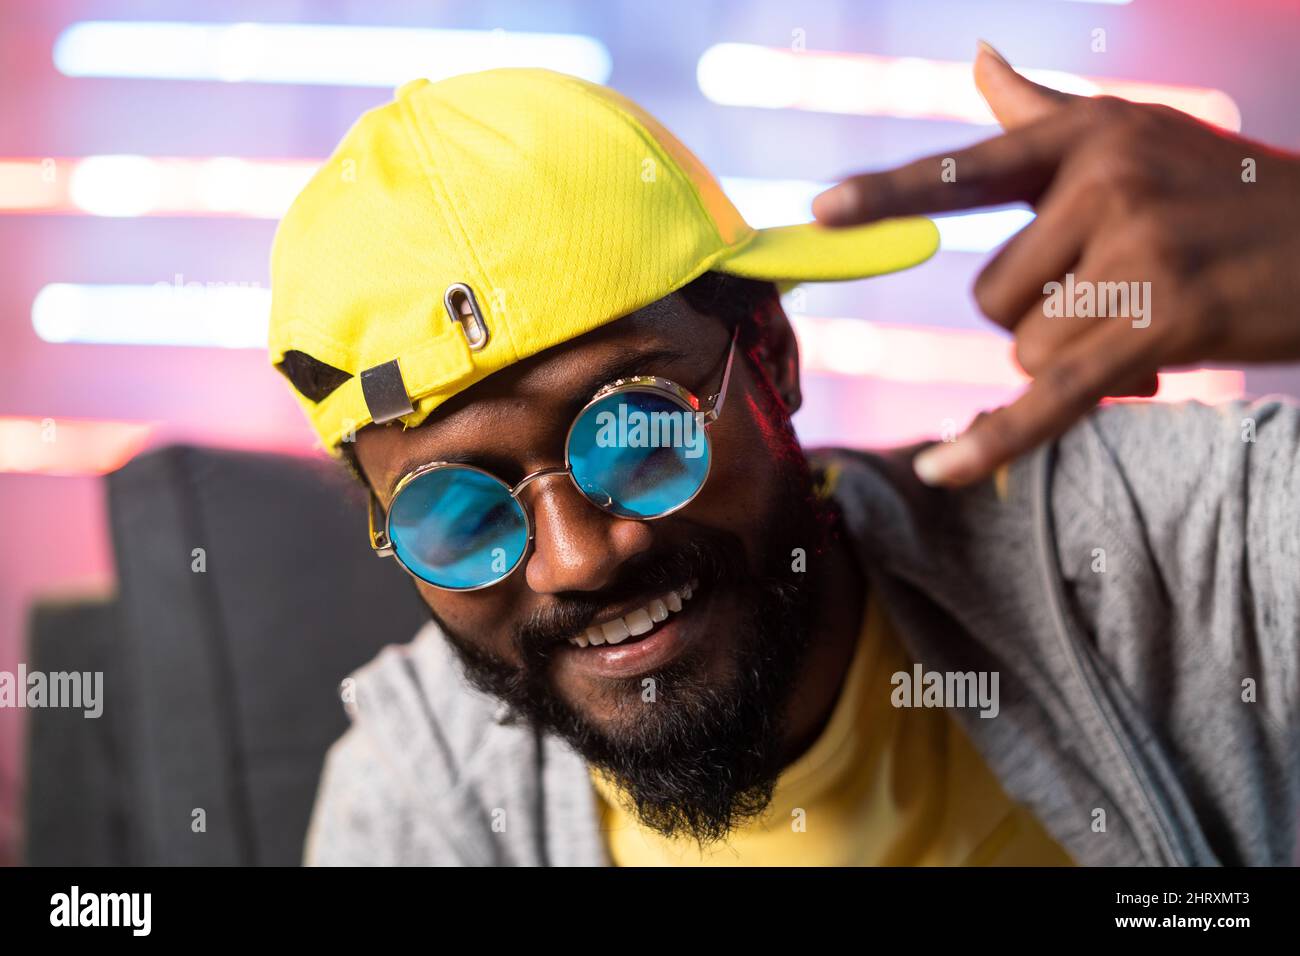 primo piano del canto del rapper hip hop guardando la macchina fotografica su sfondo neaon - concetto di musica hip hop, cantante professionista e intrattenimento Foto Stock